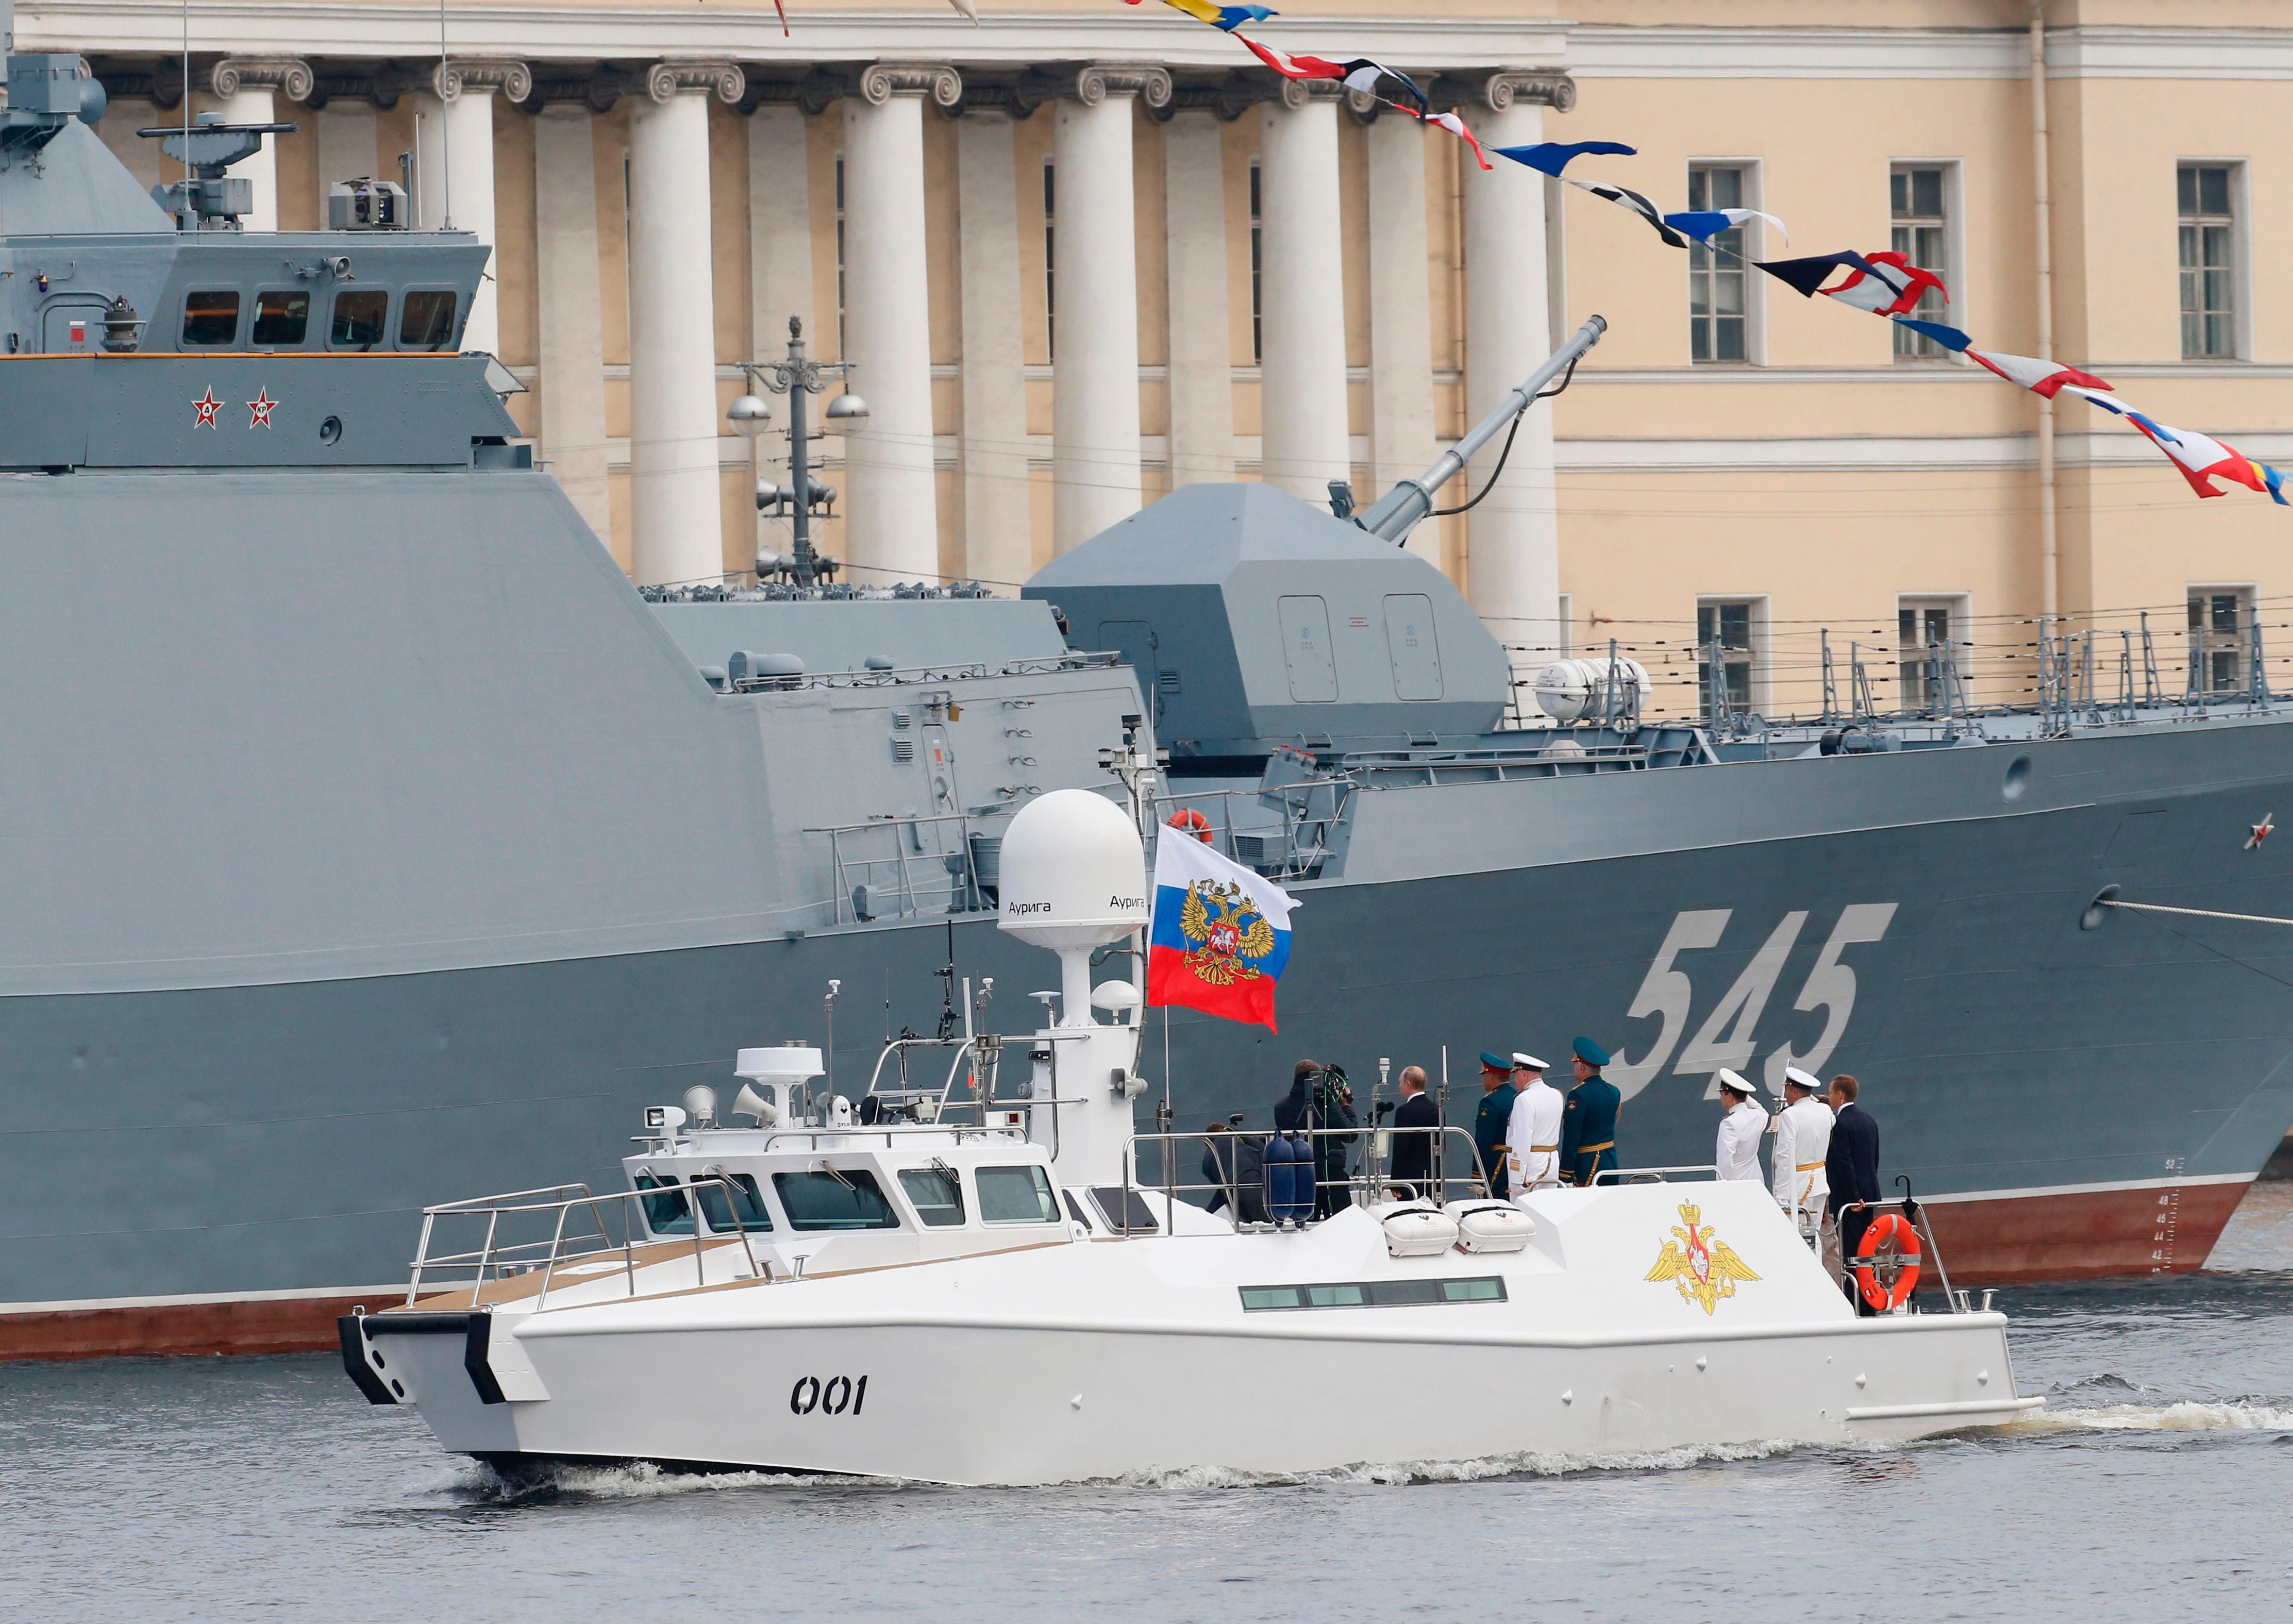 El bote de desfile era usado por Putin para dar discursos